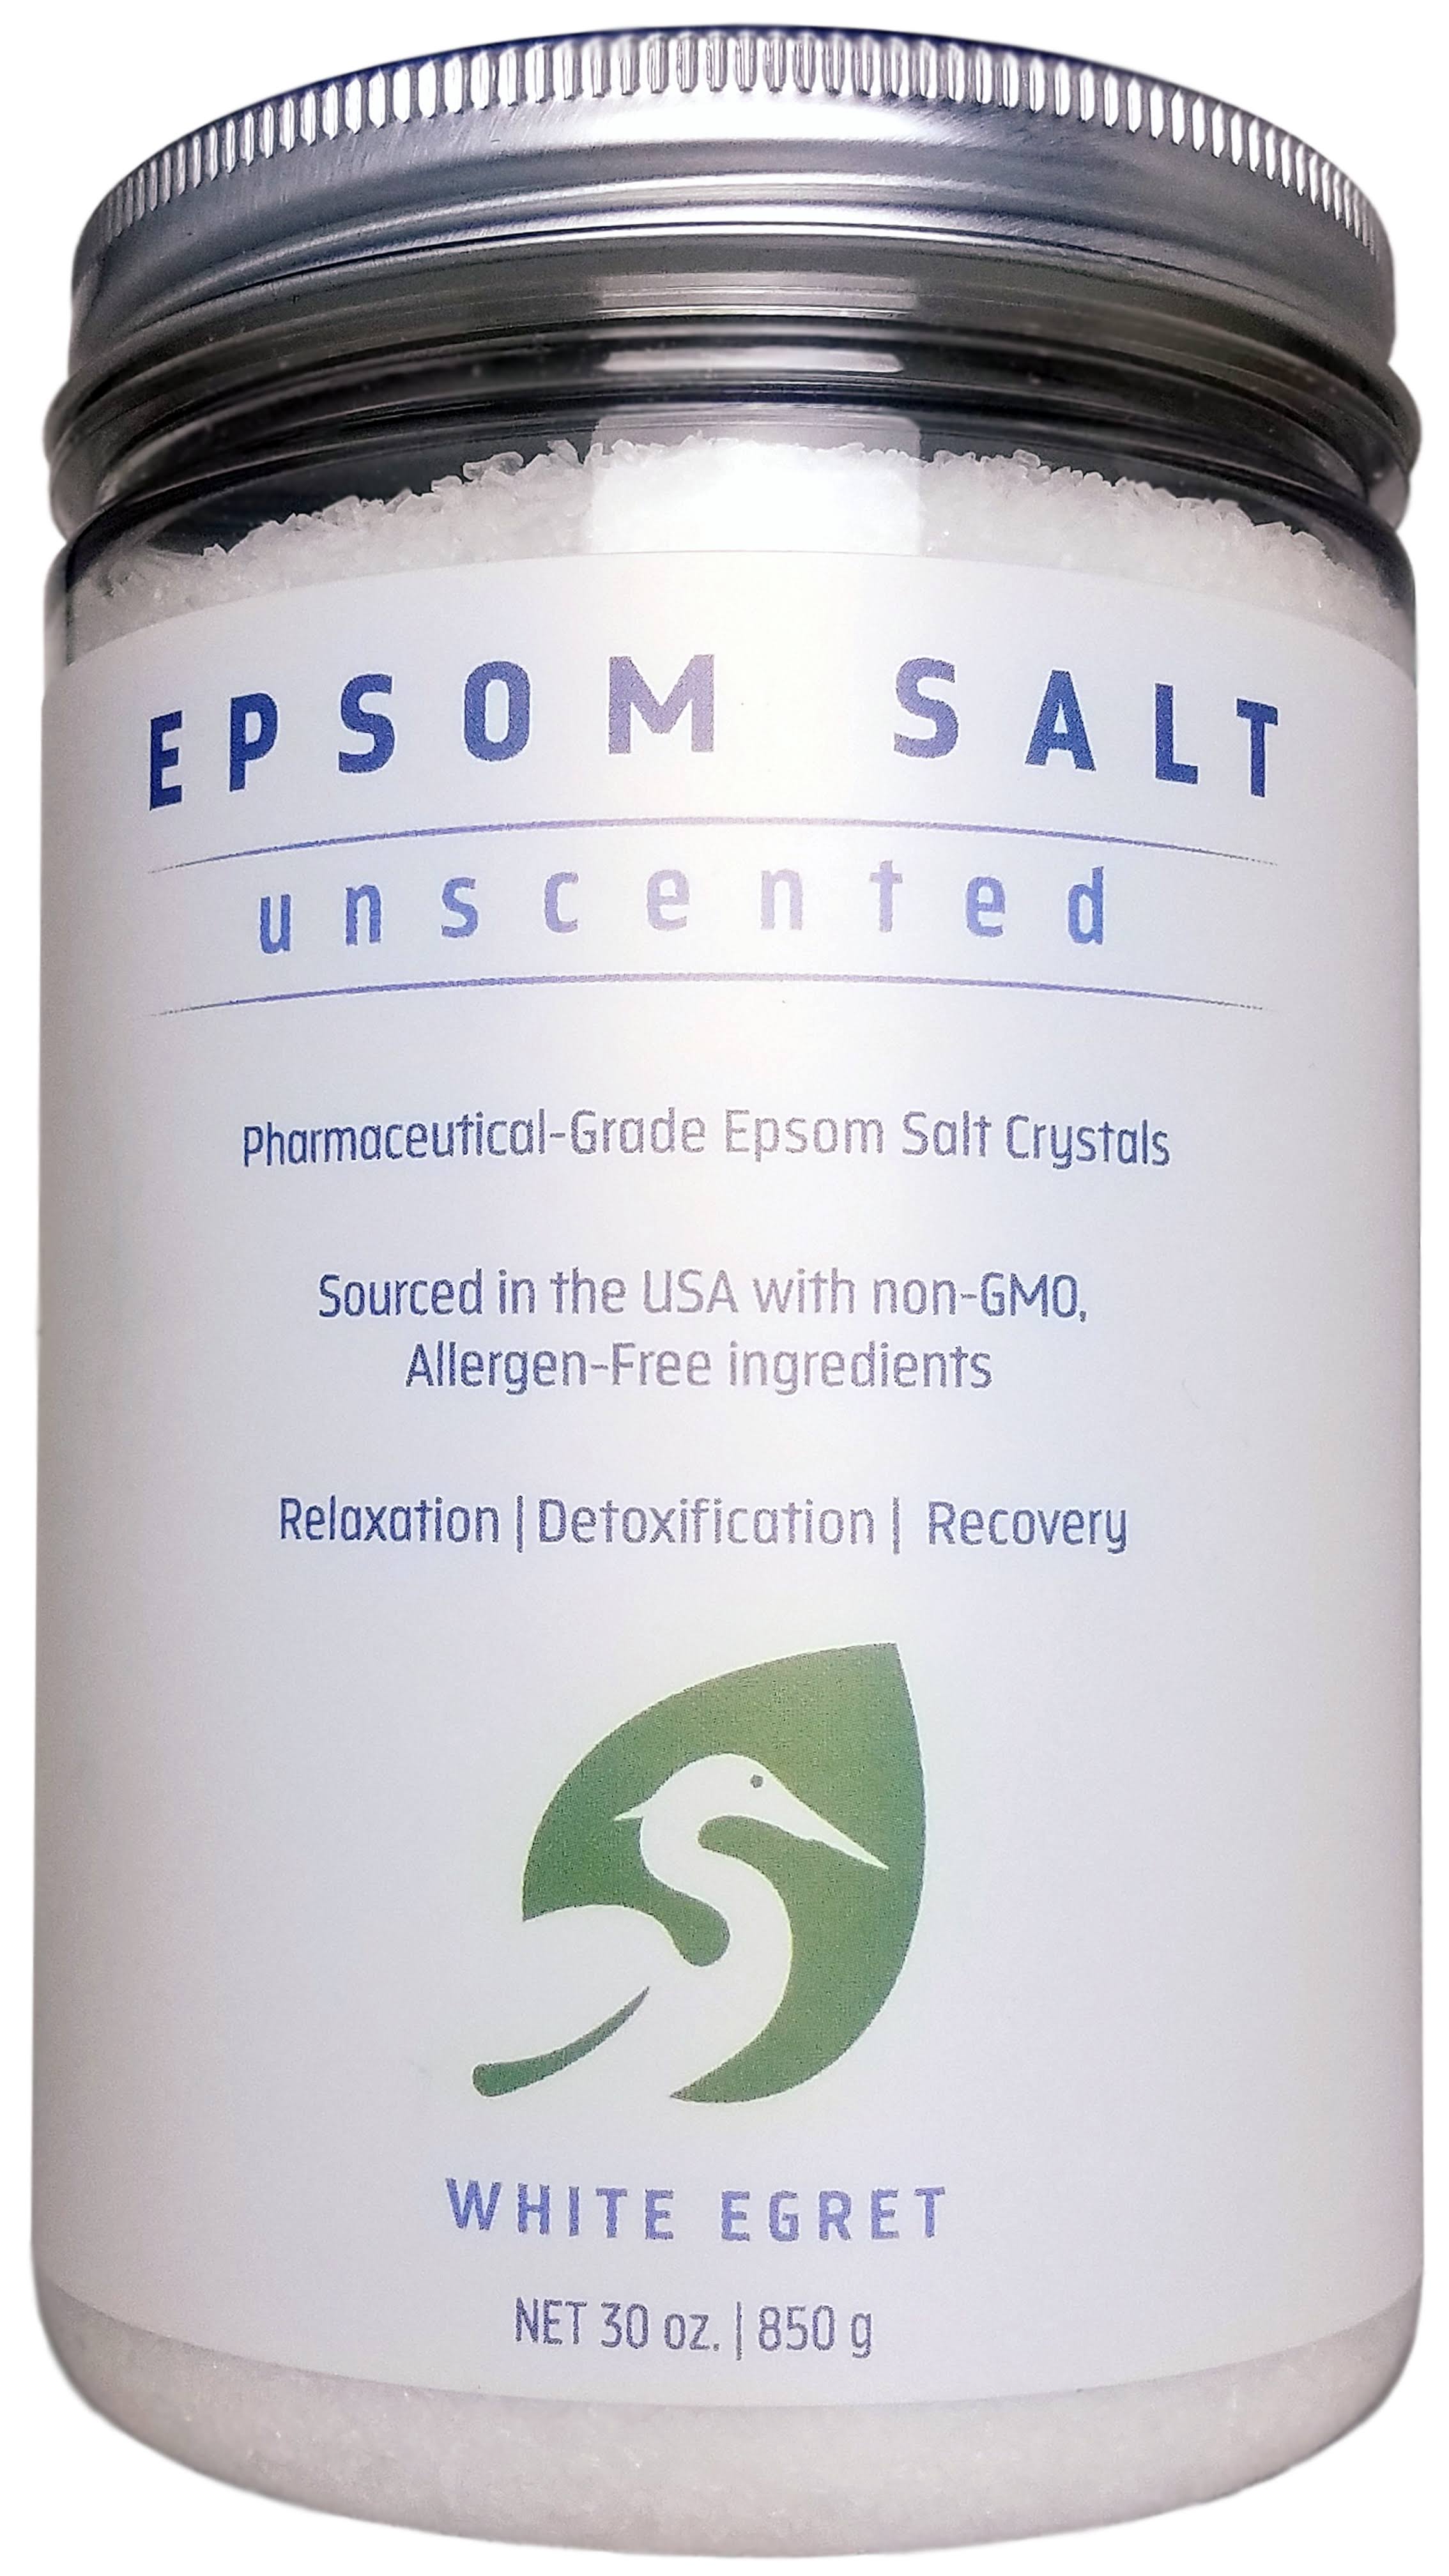 White Egret Epsom Salt - Unscented, 30oz